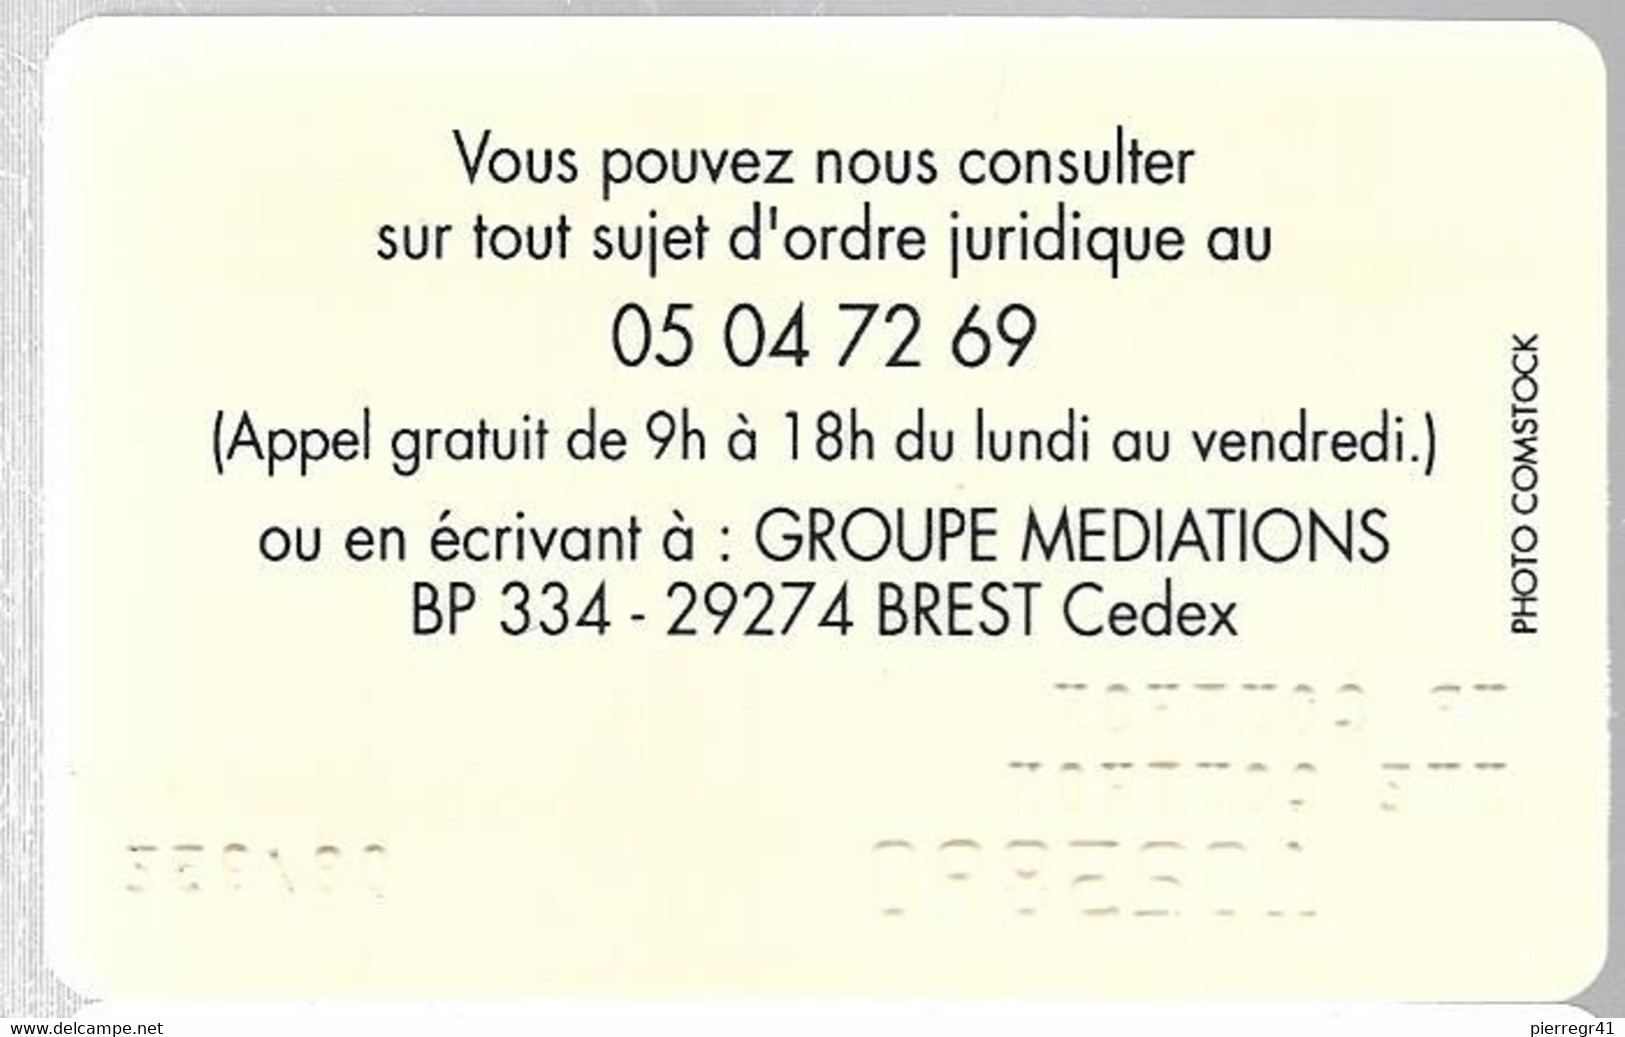 -CARTE-ADHERANT-ASSISTANCE Le JURIDIQUE-1995-Plastic Epais --TBE-RARE - Other & Unclassified